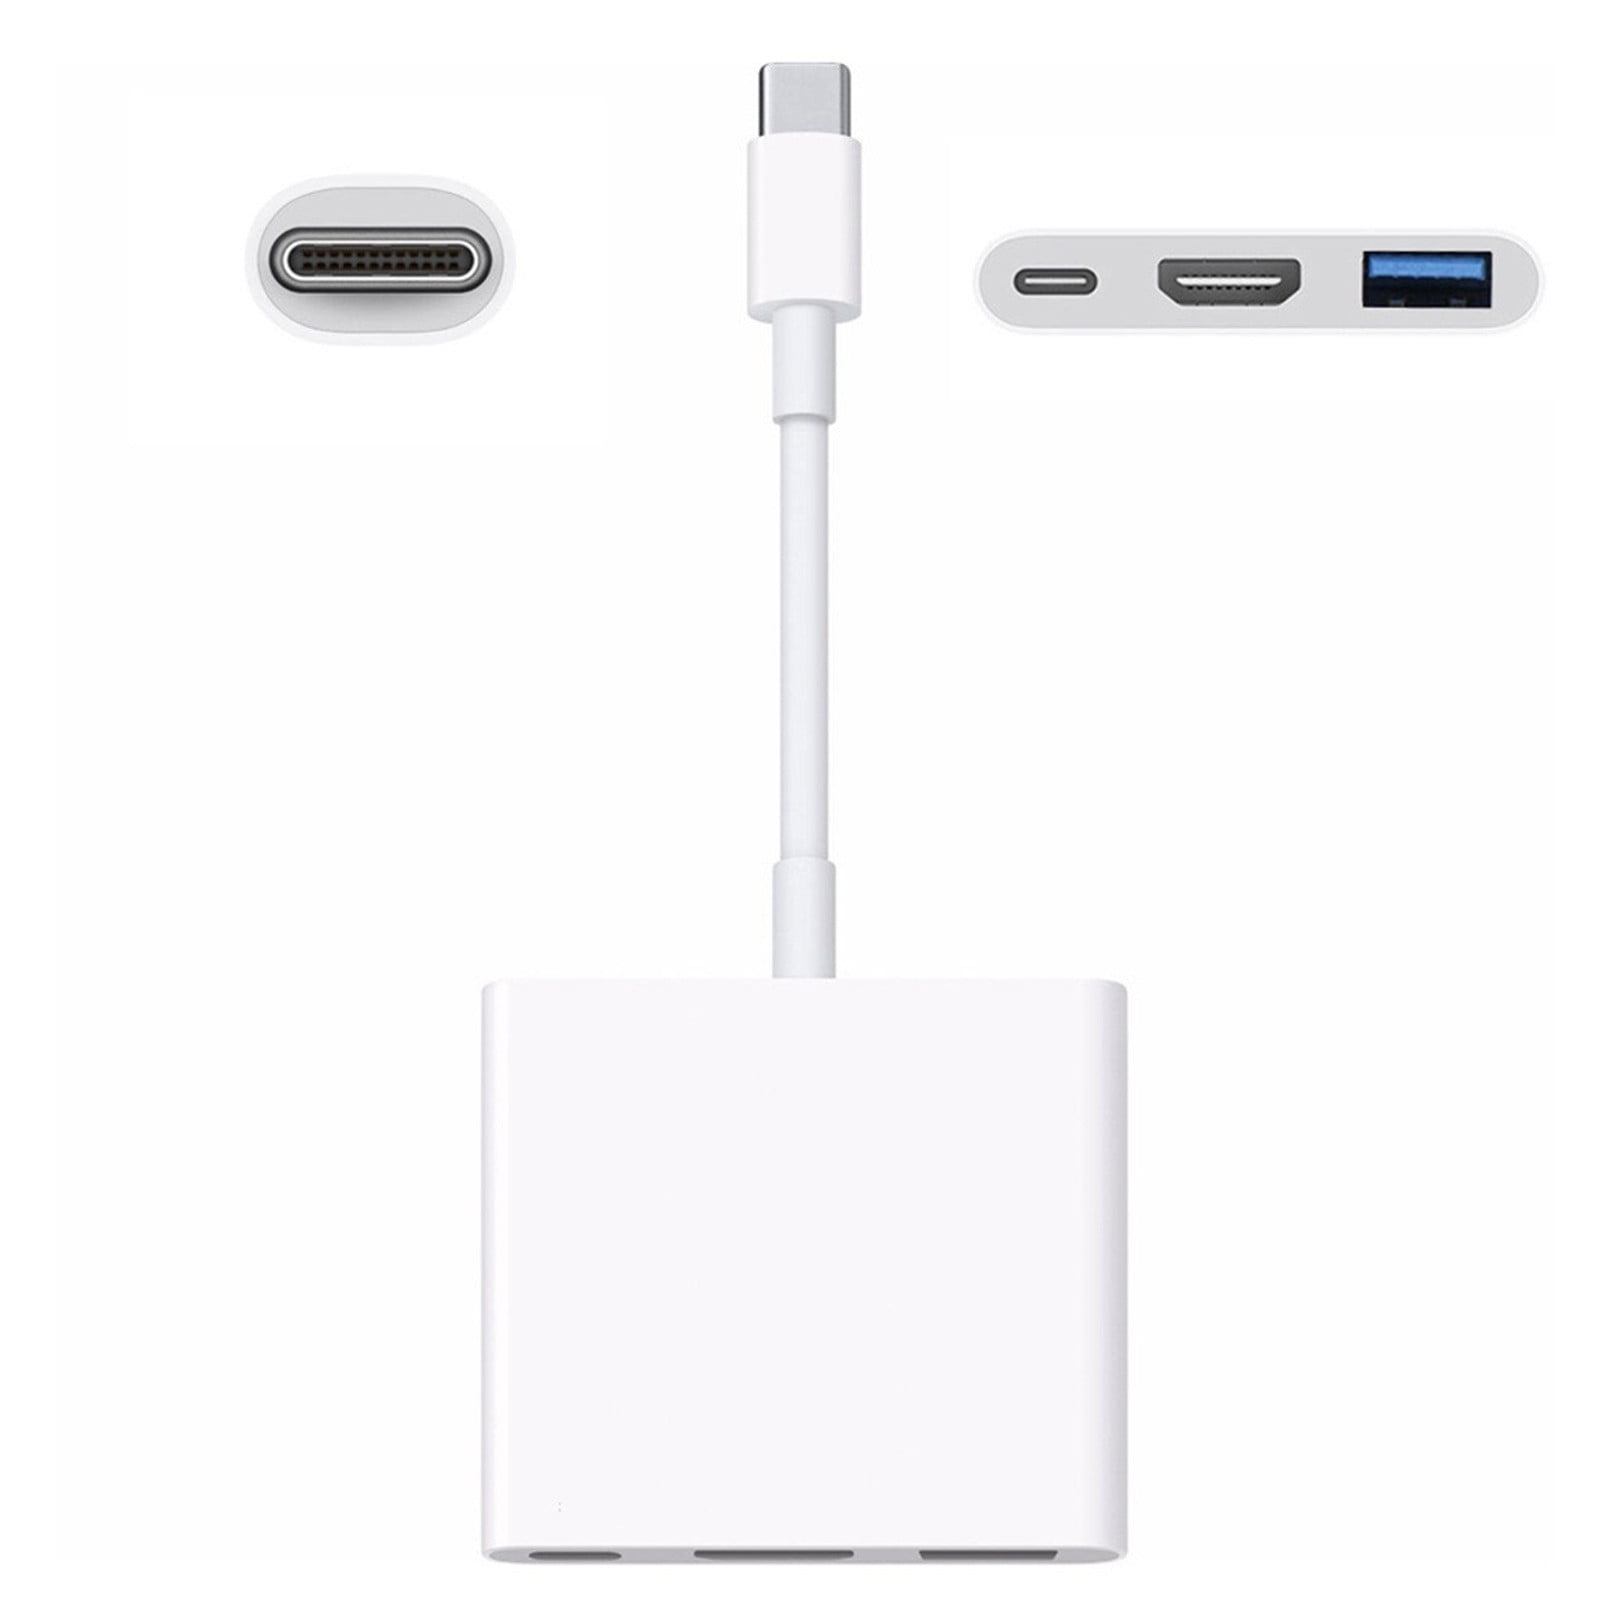 アップル(Apple) MUF82ZA A USB-C Digital AV